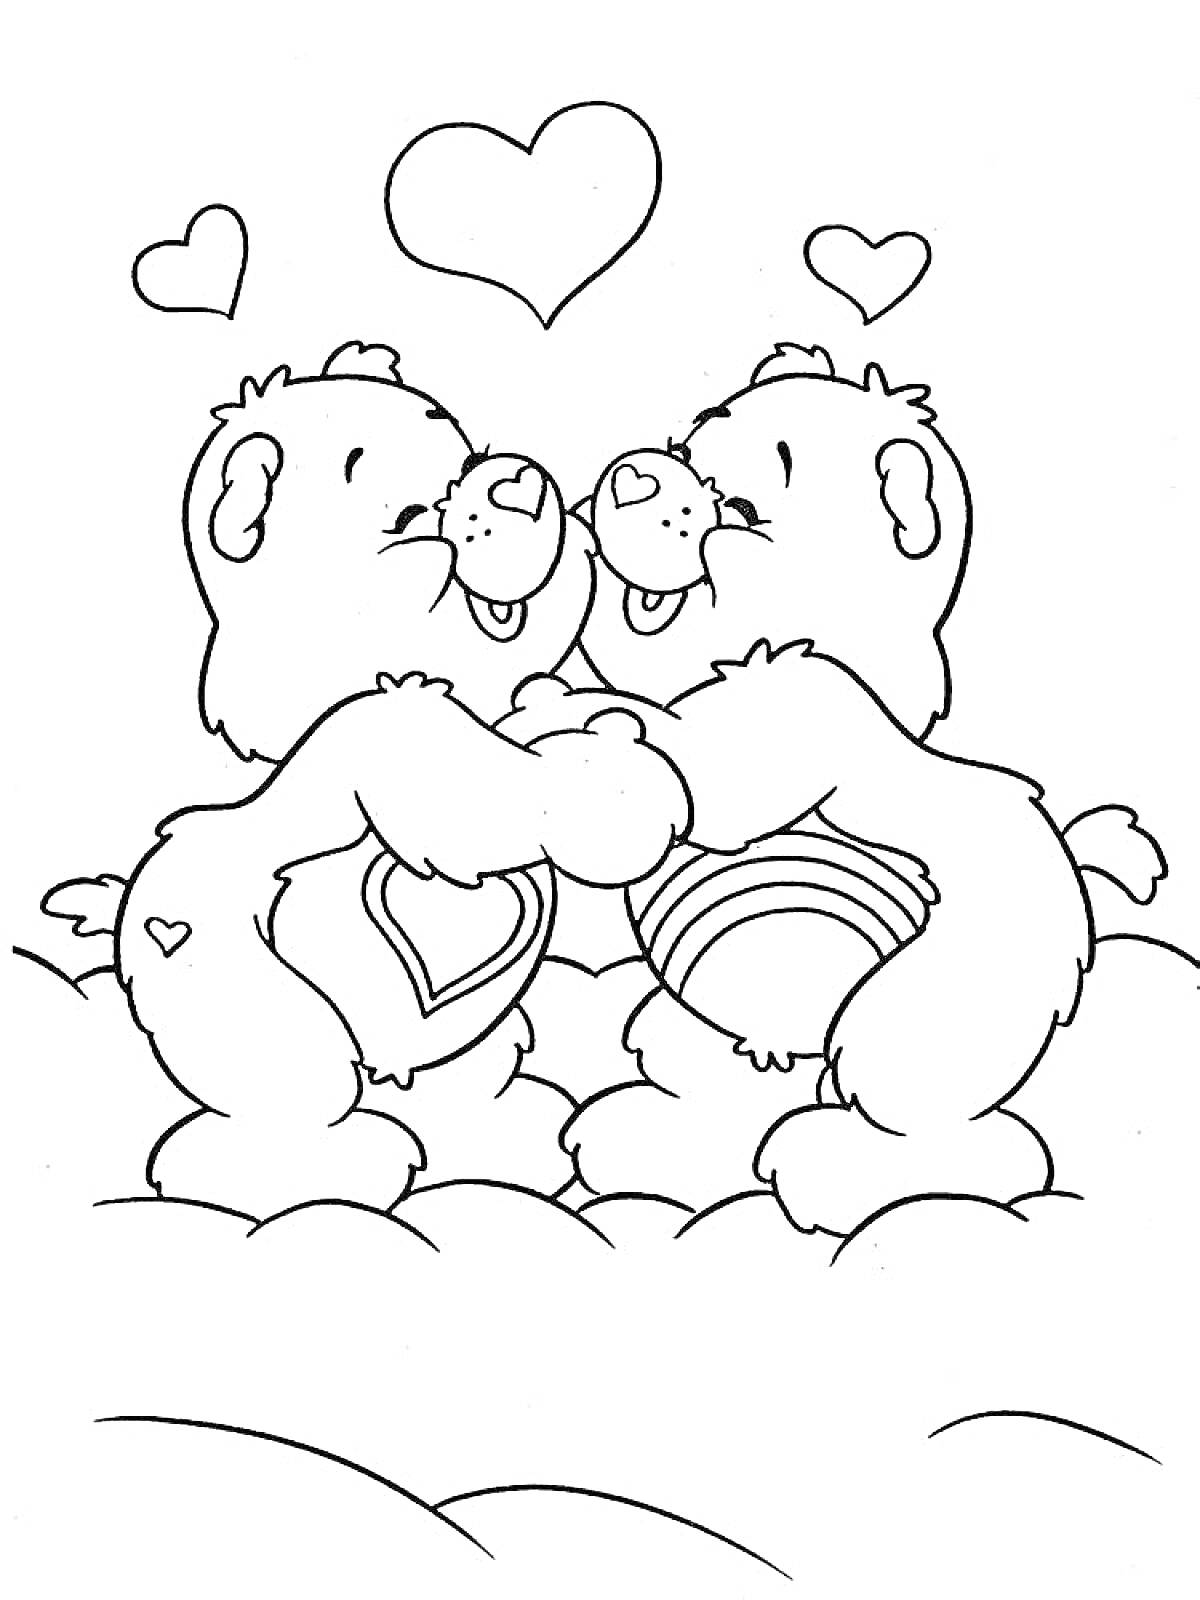 Раскраска Два обнимающихся медвежонка с сердцами на облаках